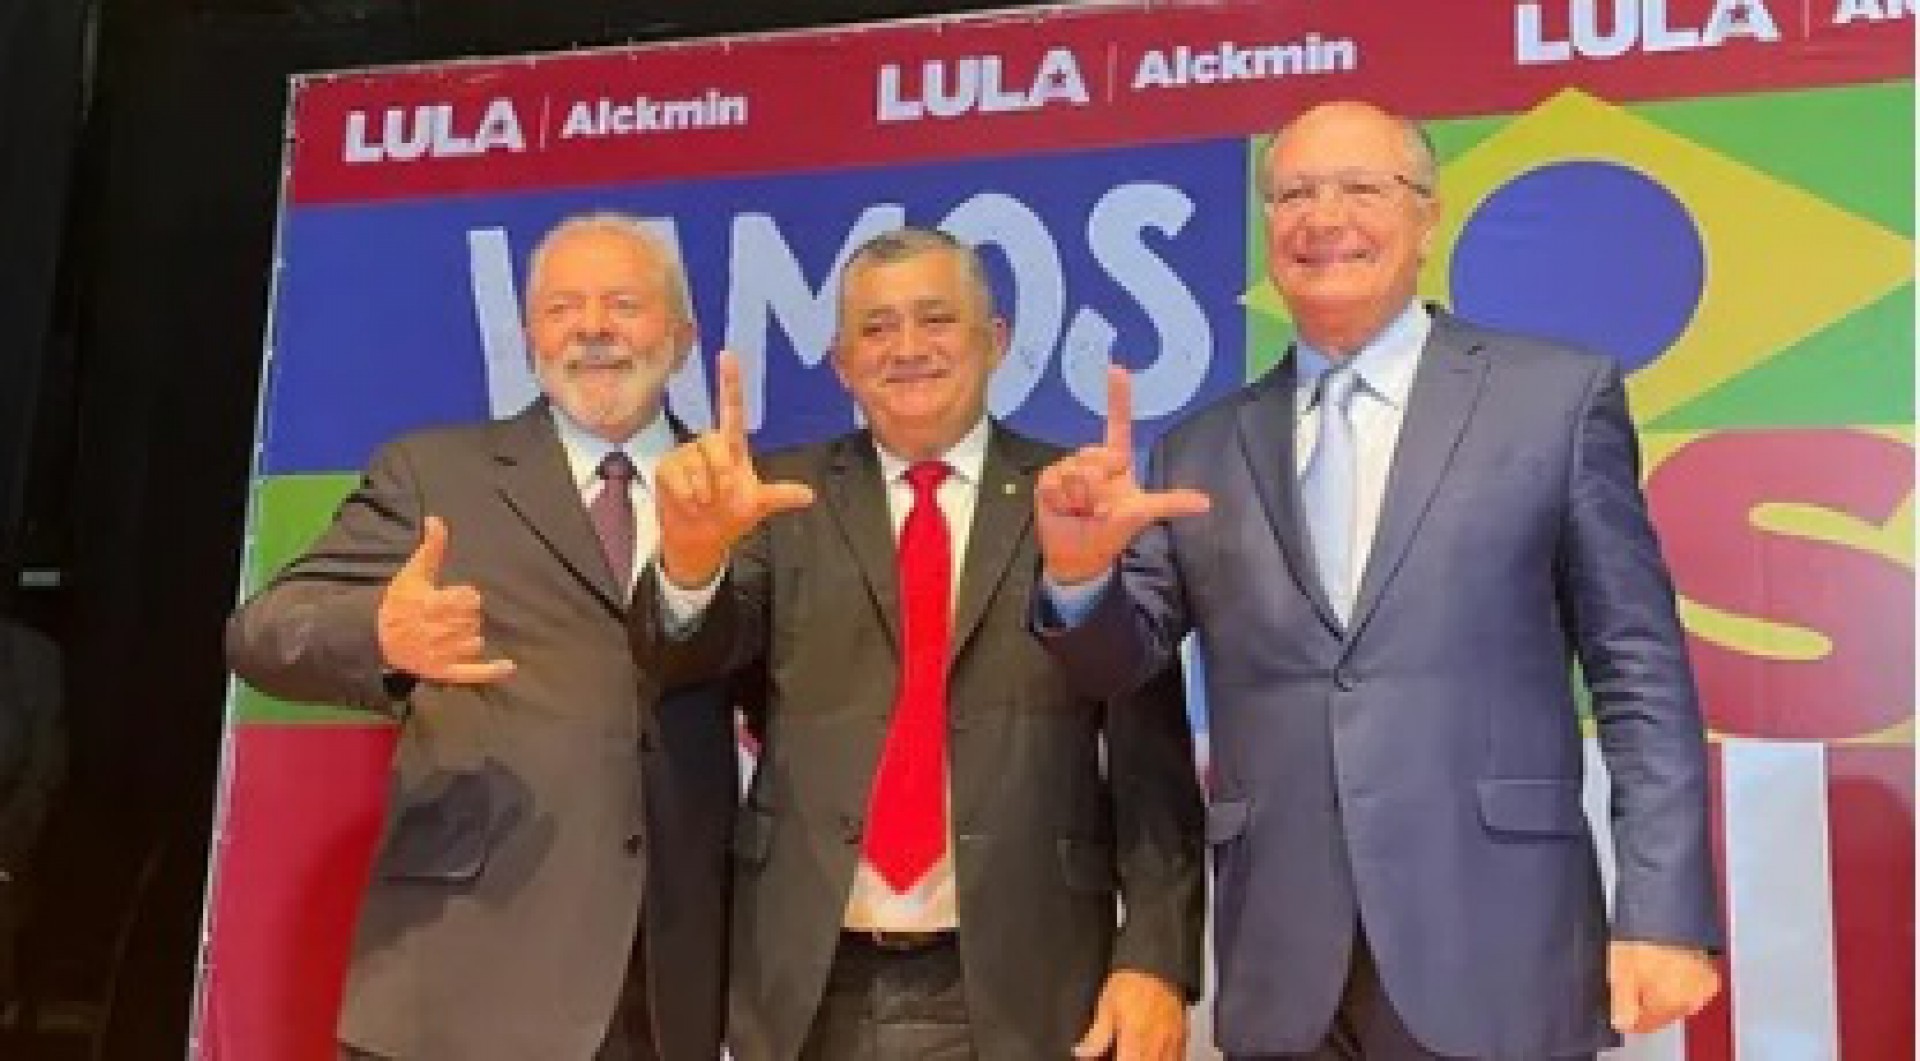 Guimarães diz que Lula dá aval para a candidatura do PT caso Izolda não vá para a reeleição (Foto: Reprodução/Instagram)